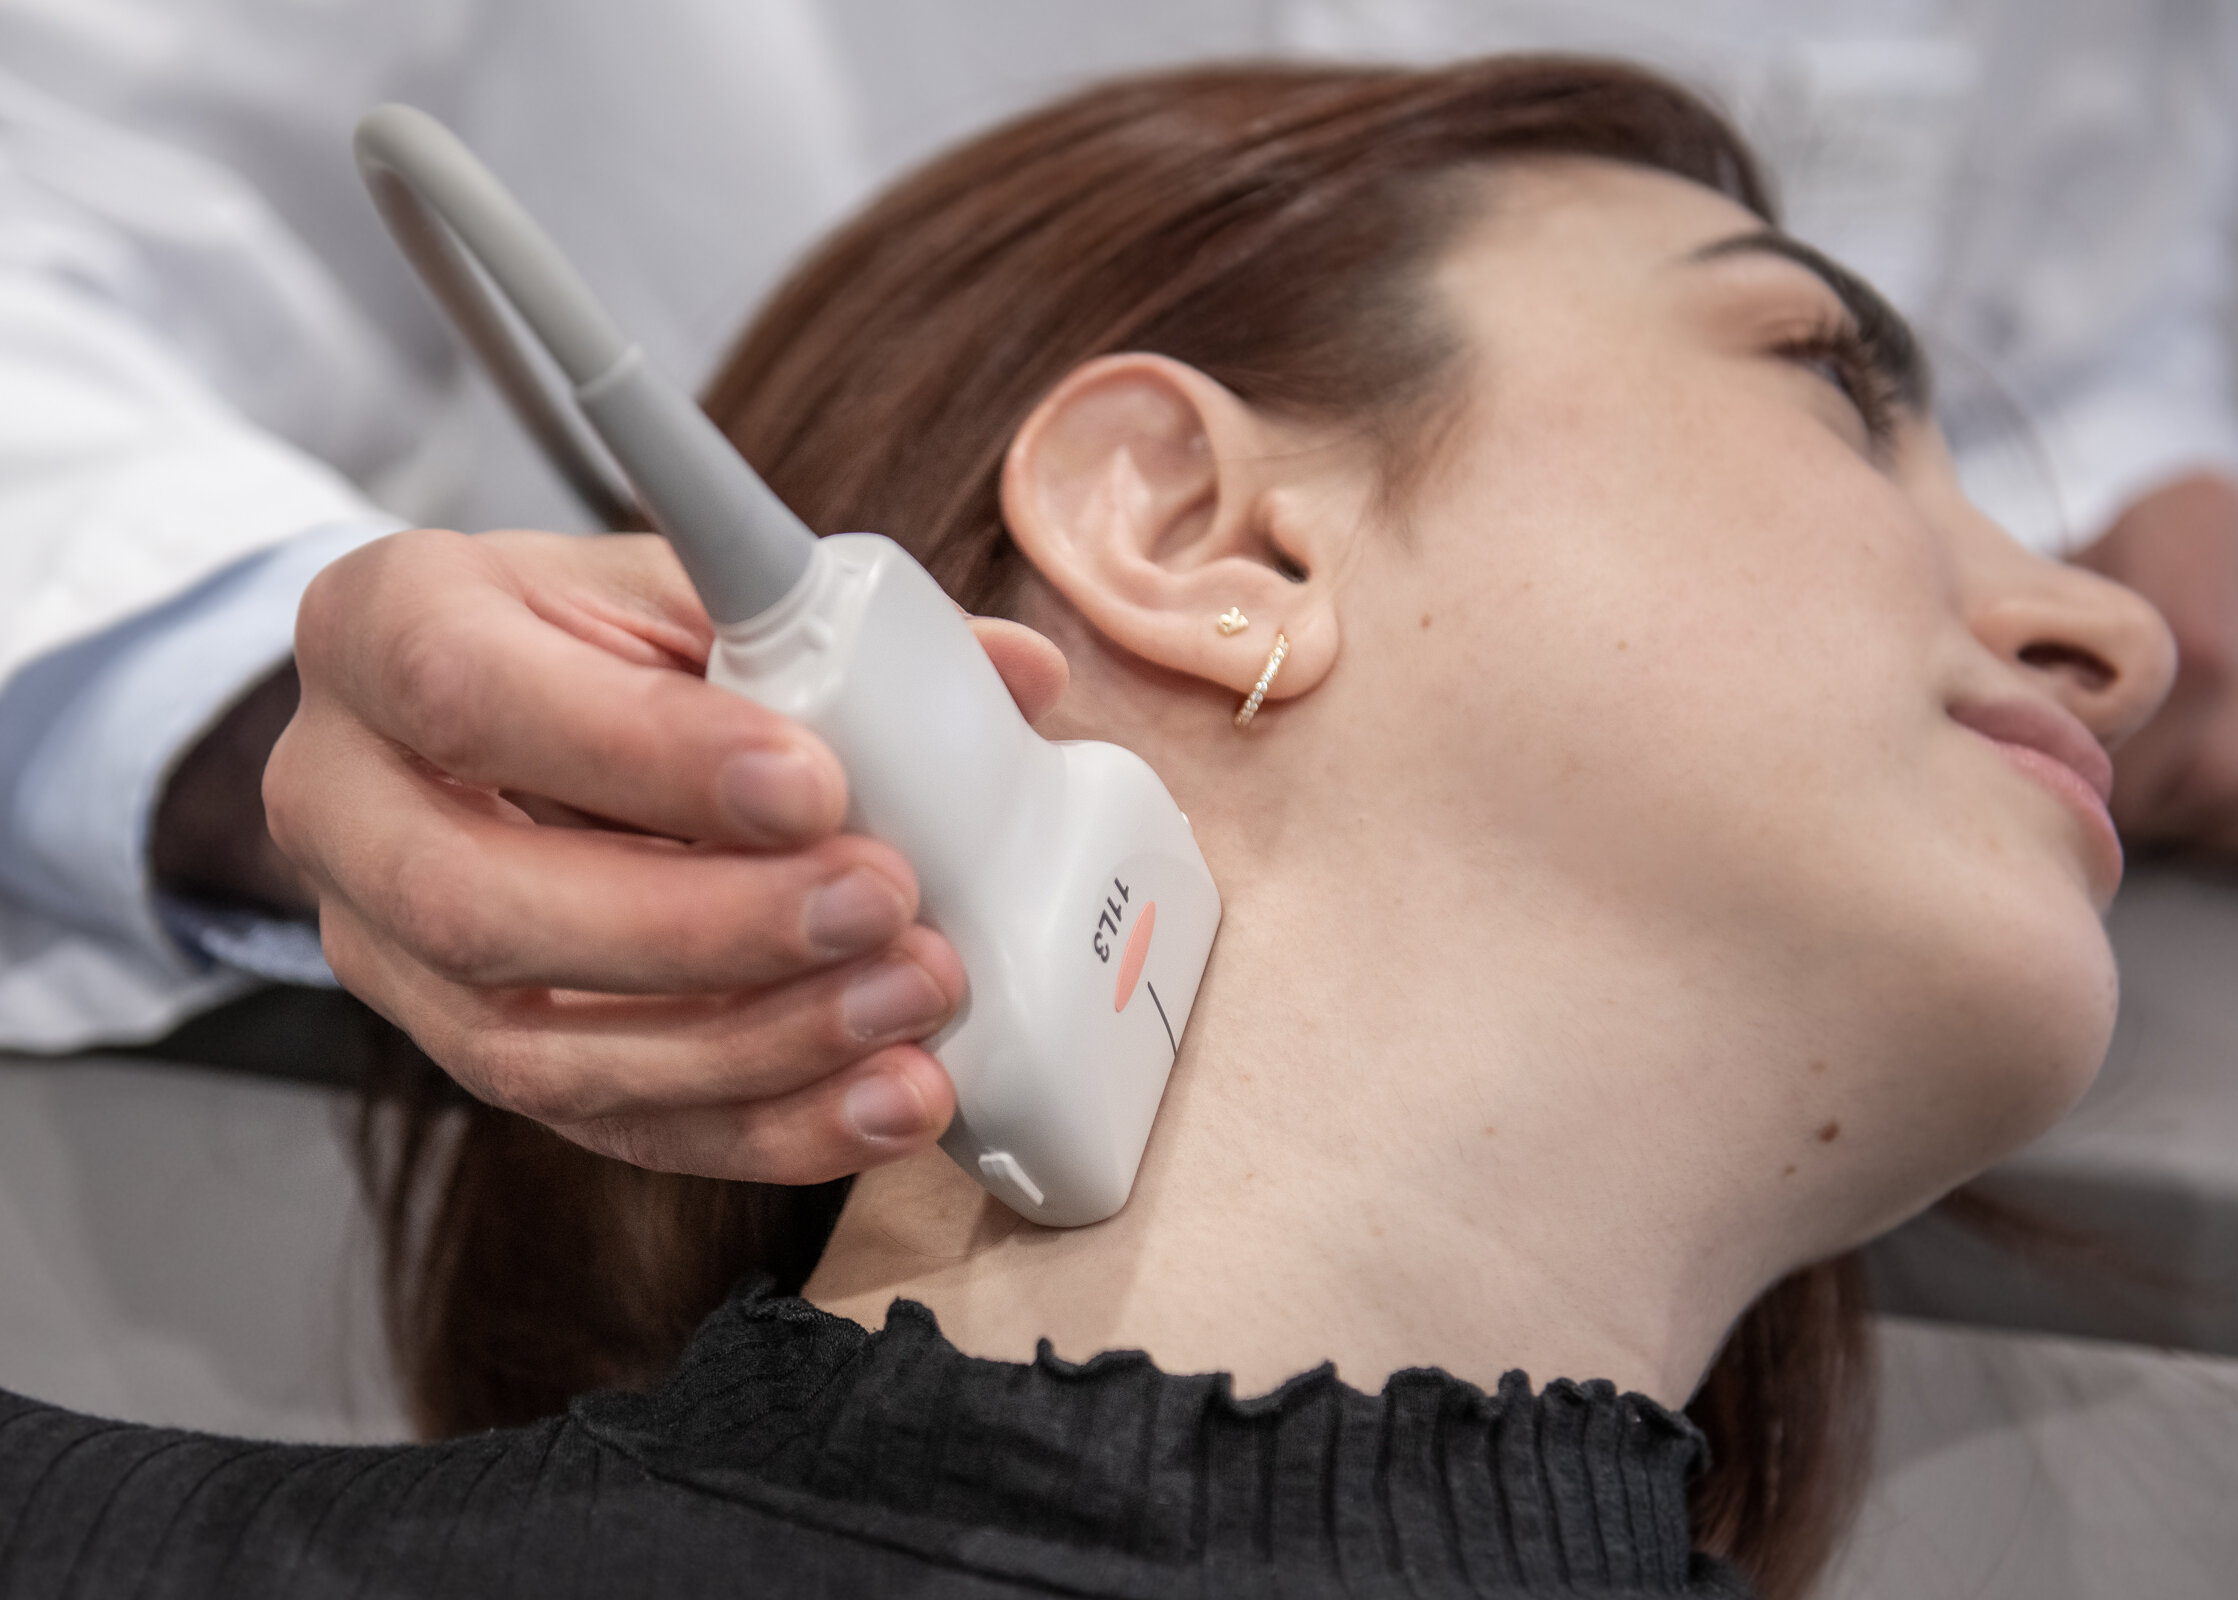 Eine Dopplersonografie wird am Hals einer Patientin durchgeführt.